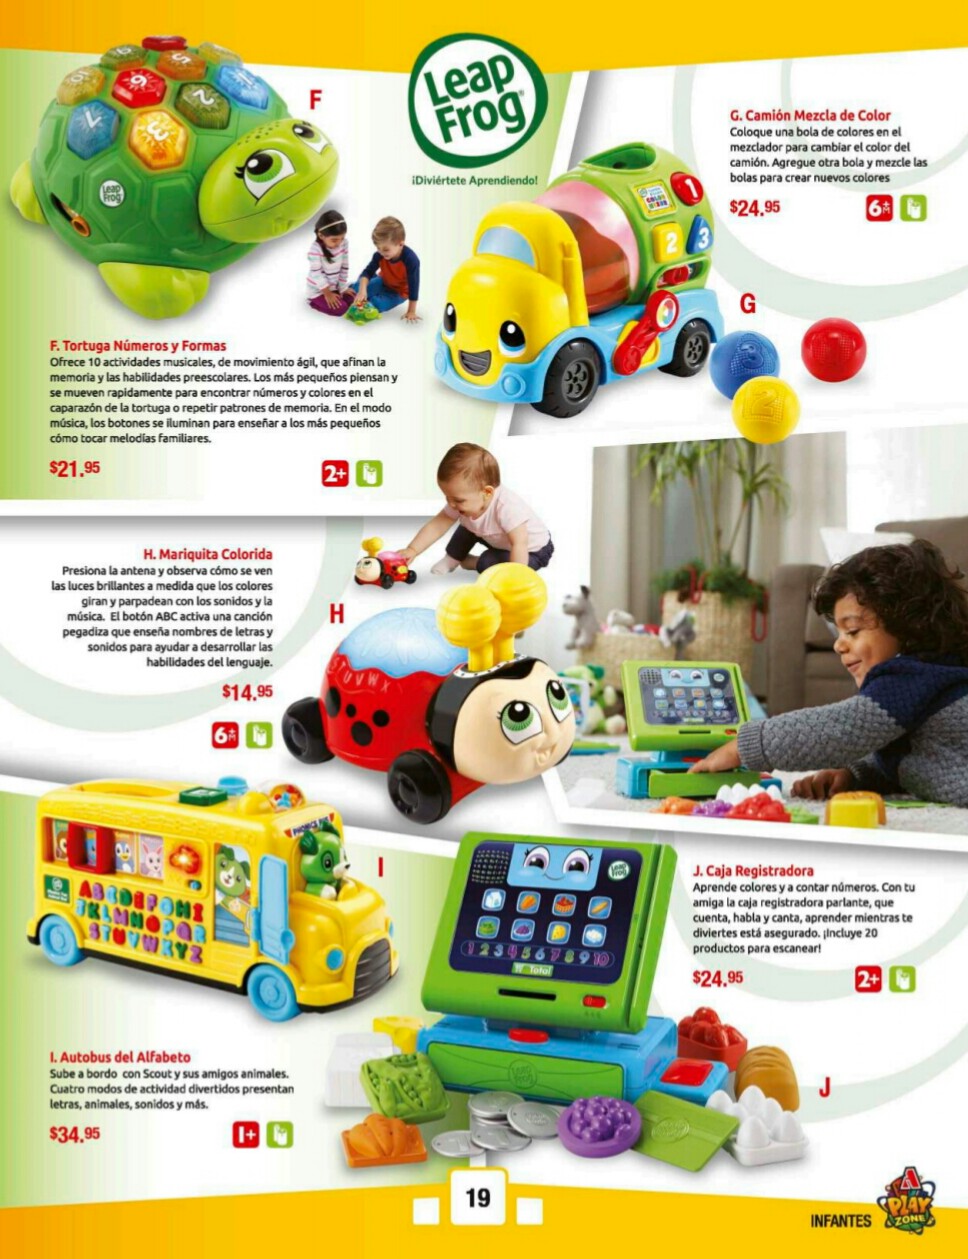 Catalogos juguetes farmacia Arrocha 2018 p19